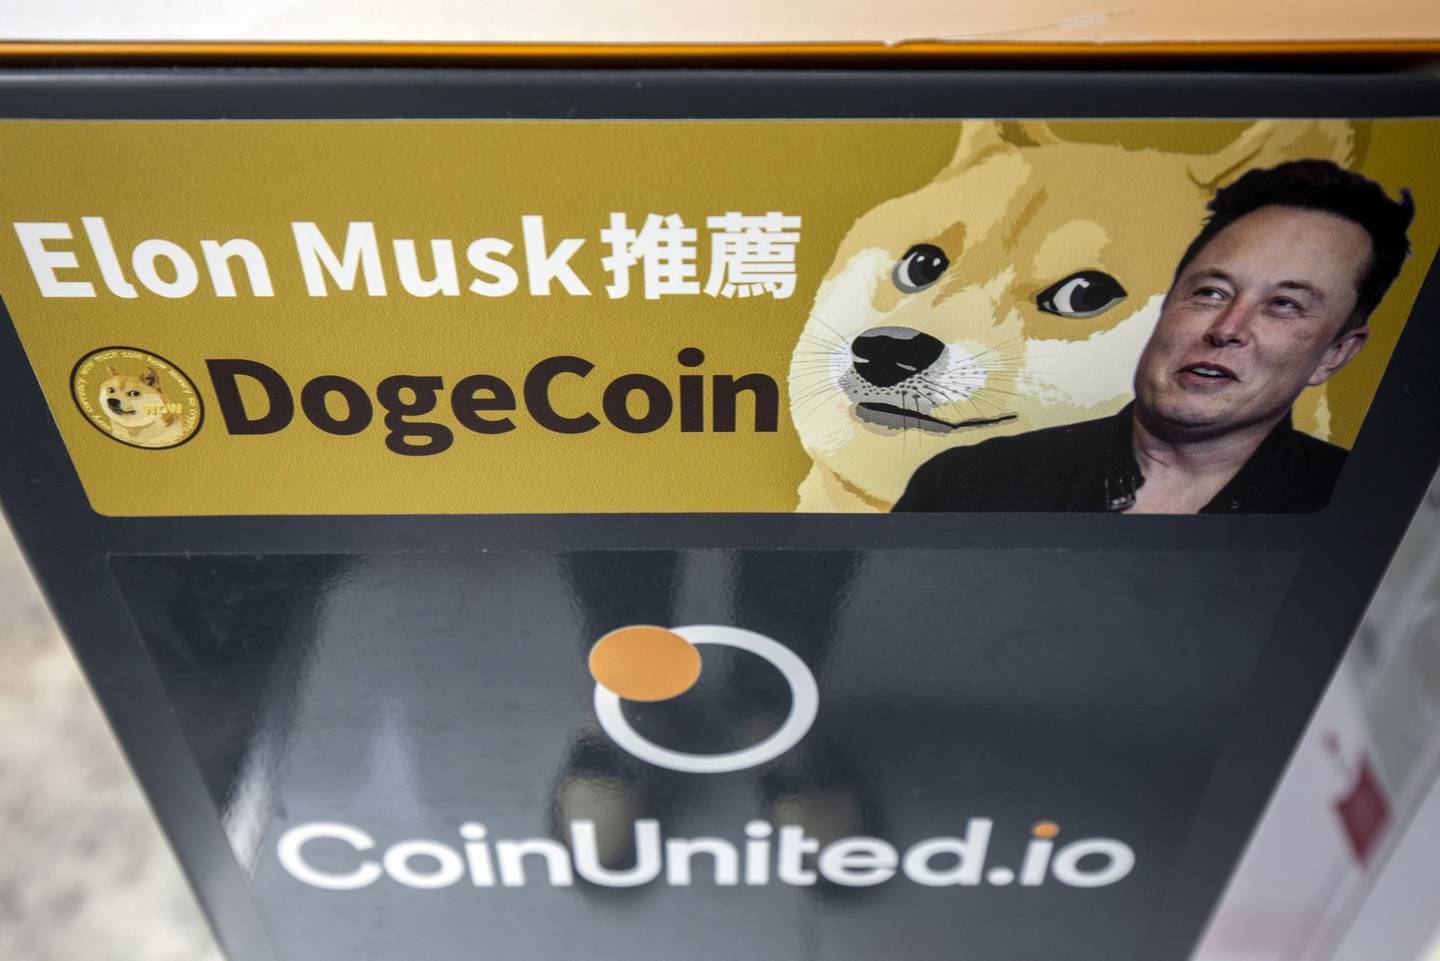 Imagen del perro que representa dogecoin al lado de una de Elon Musk